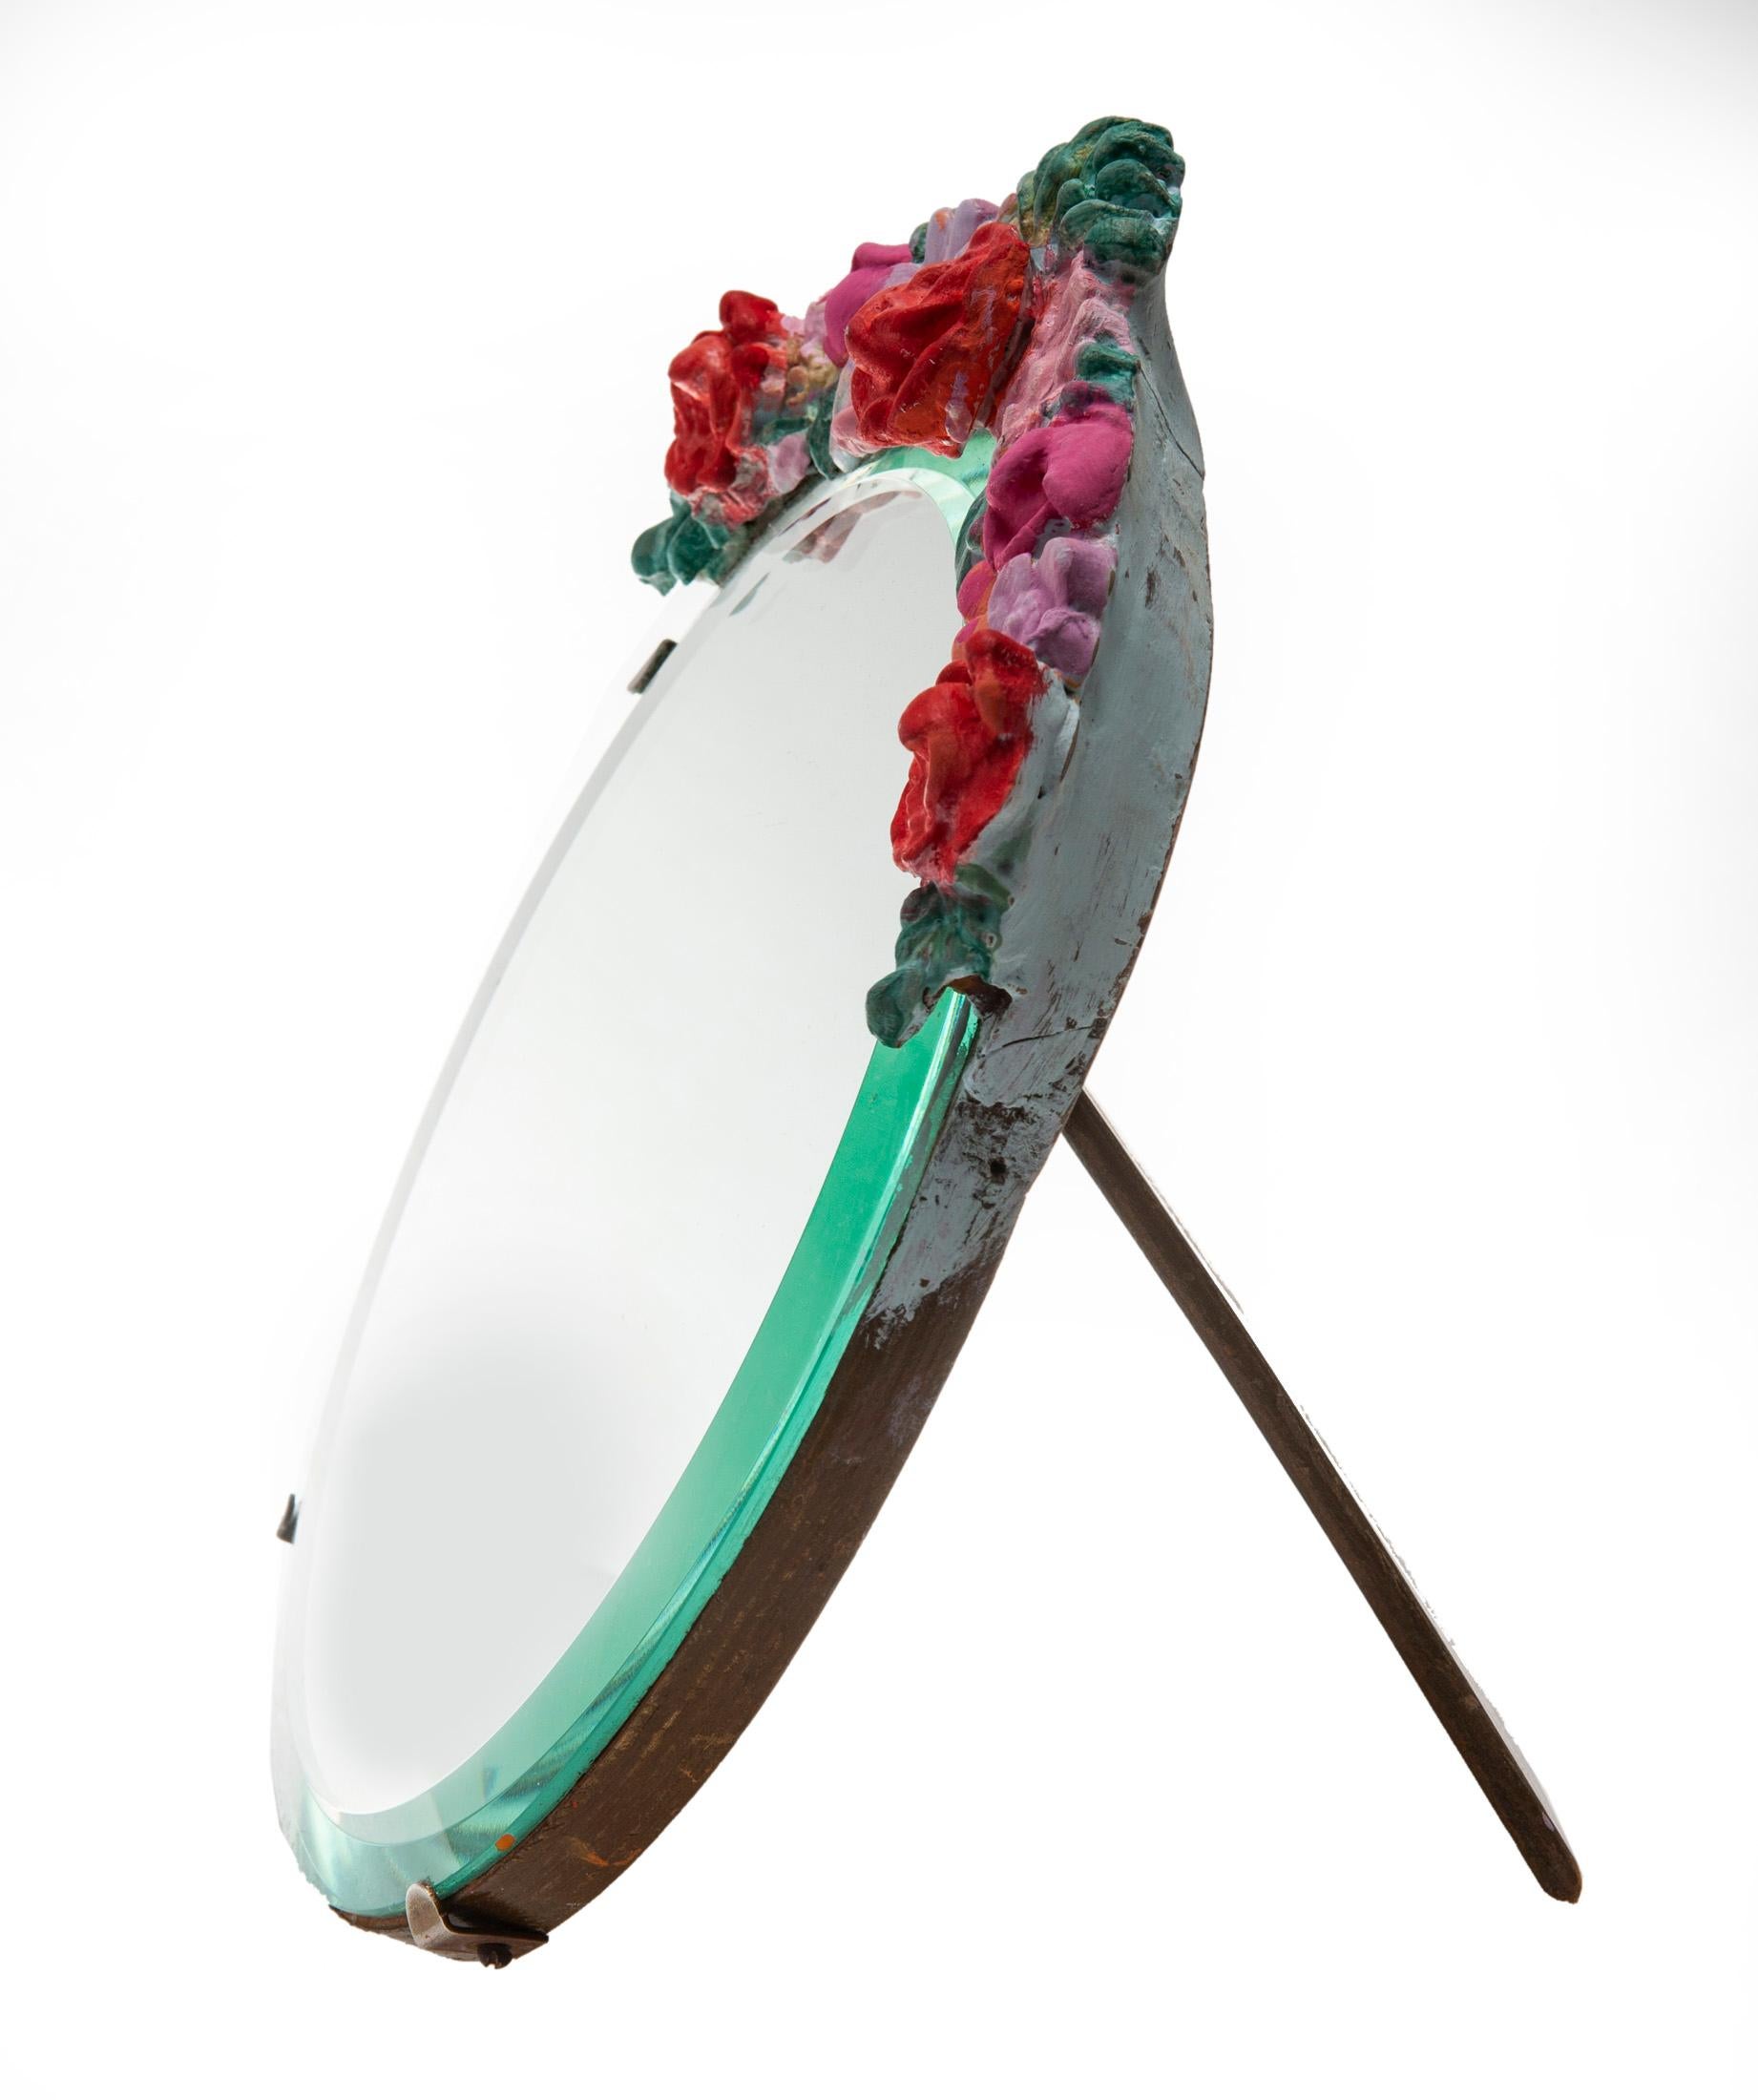 Reich bemalter, runder, abgeschrägter Spiegel mit Barbola-Rahmen auf einer schweren Eichenstaffelei.
Die ursprünglichen Blumen wurden in fröhlichen Rot- und Pinktönen neu bemalt.
